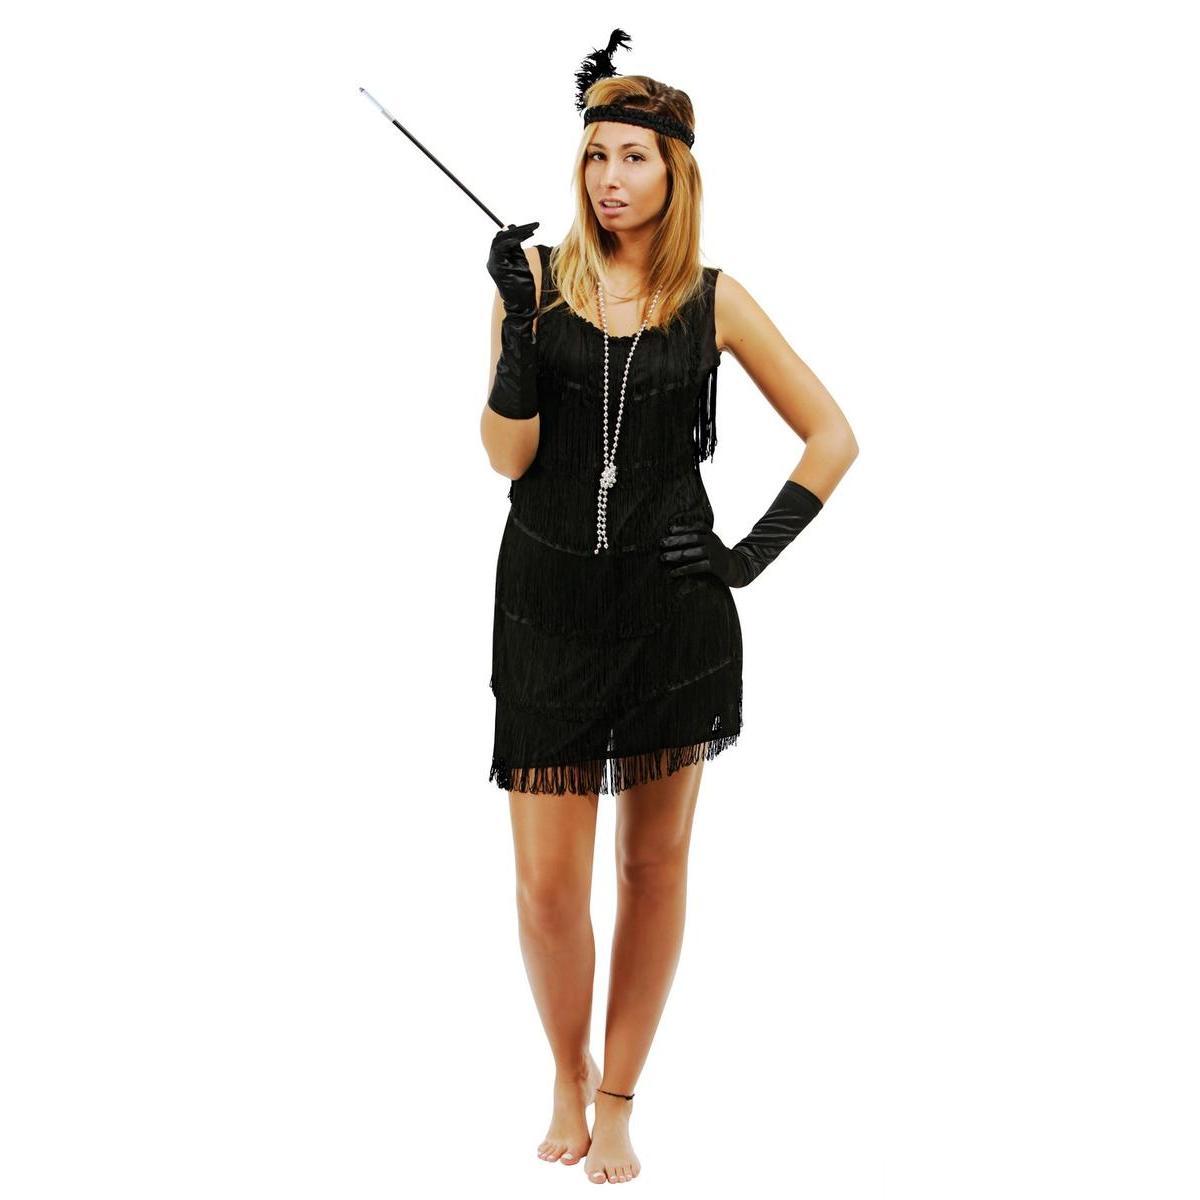 Costume robe Charleston - Taille adulte (S/M) - L 48 x H 3 x l 44 cm - Noir - PTIT CLOWN